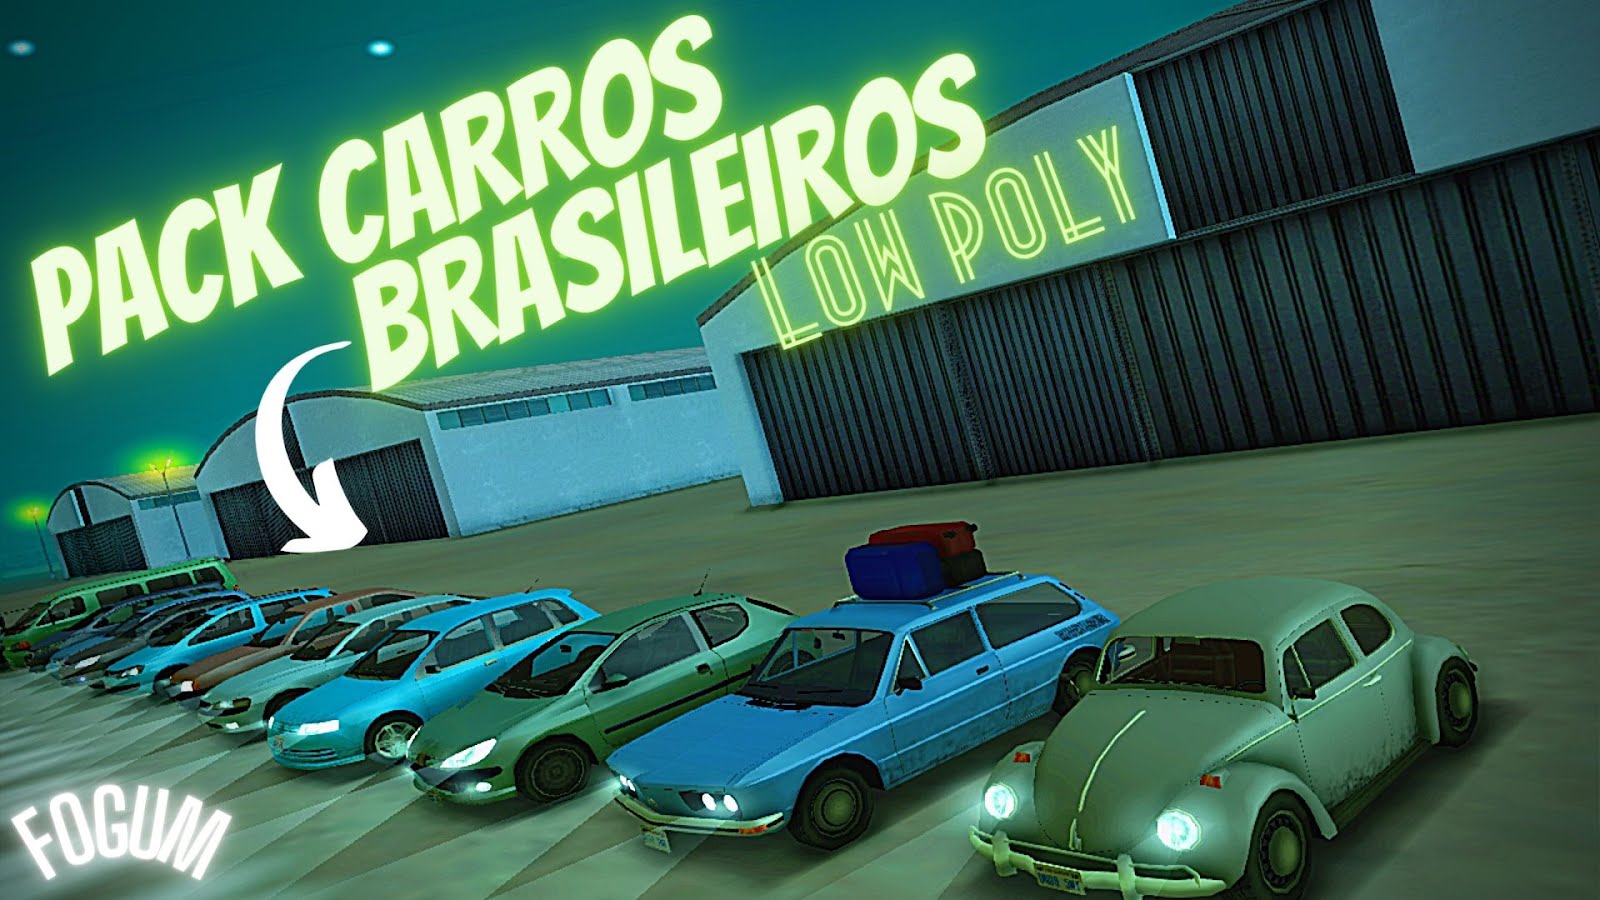 GTA V Mods - Pack de Carros Brasileiros para GTA V DOWNLOAD